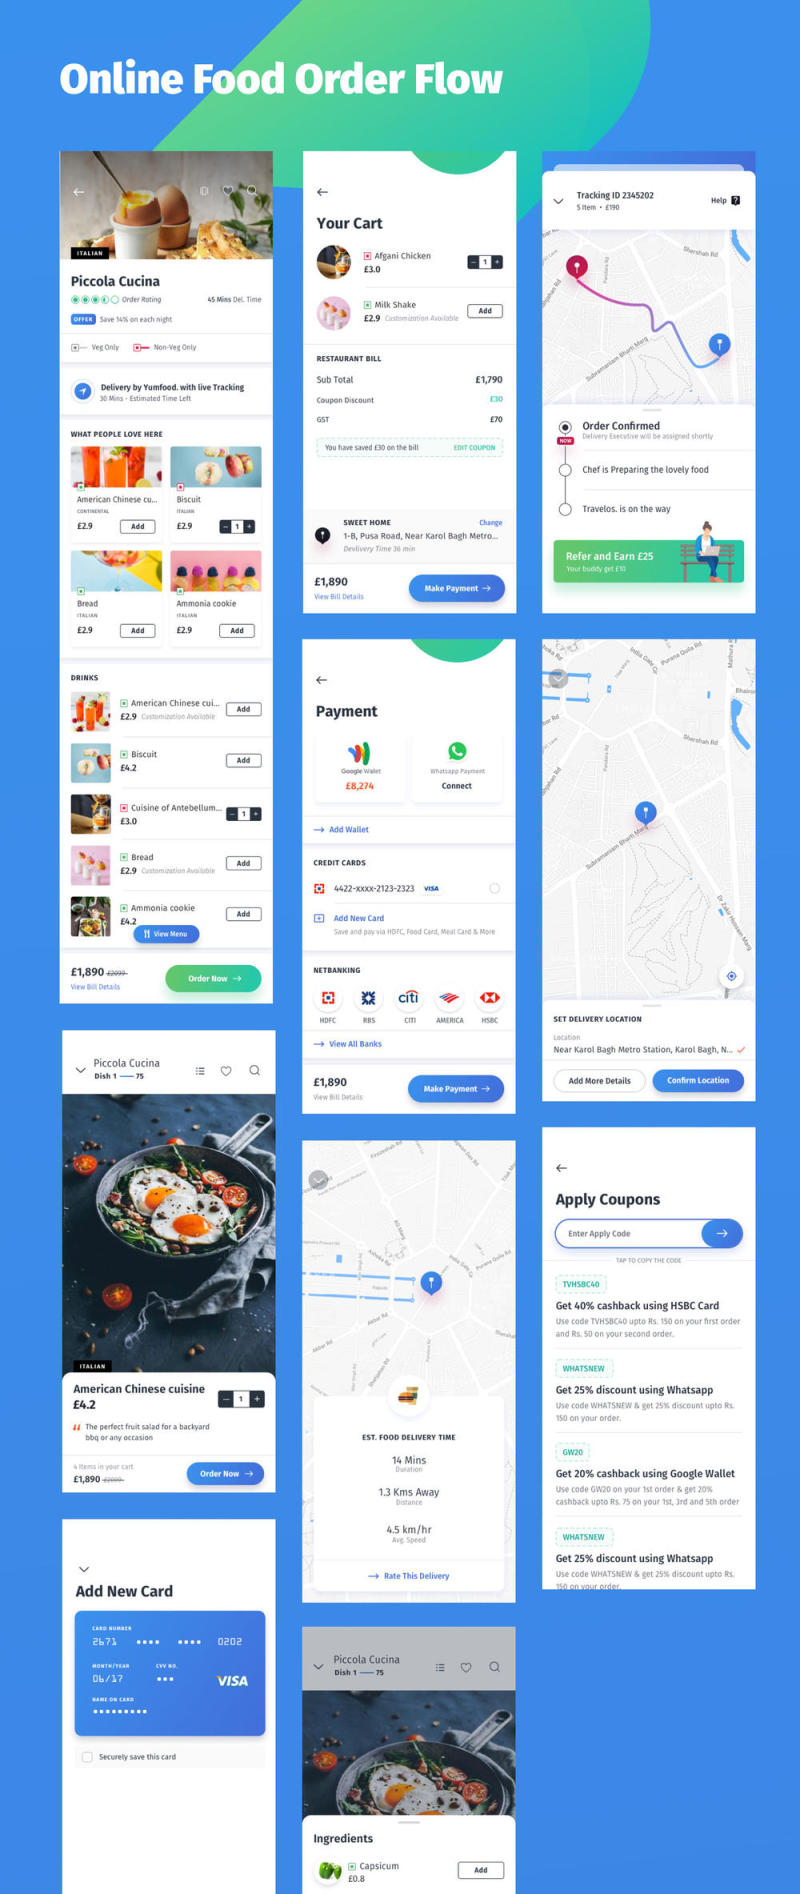 找到最好的餐馆，咖啡馆和酒吧，YumFood - Mobile App UI套件